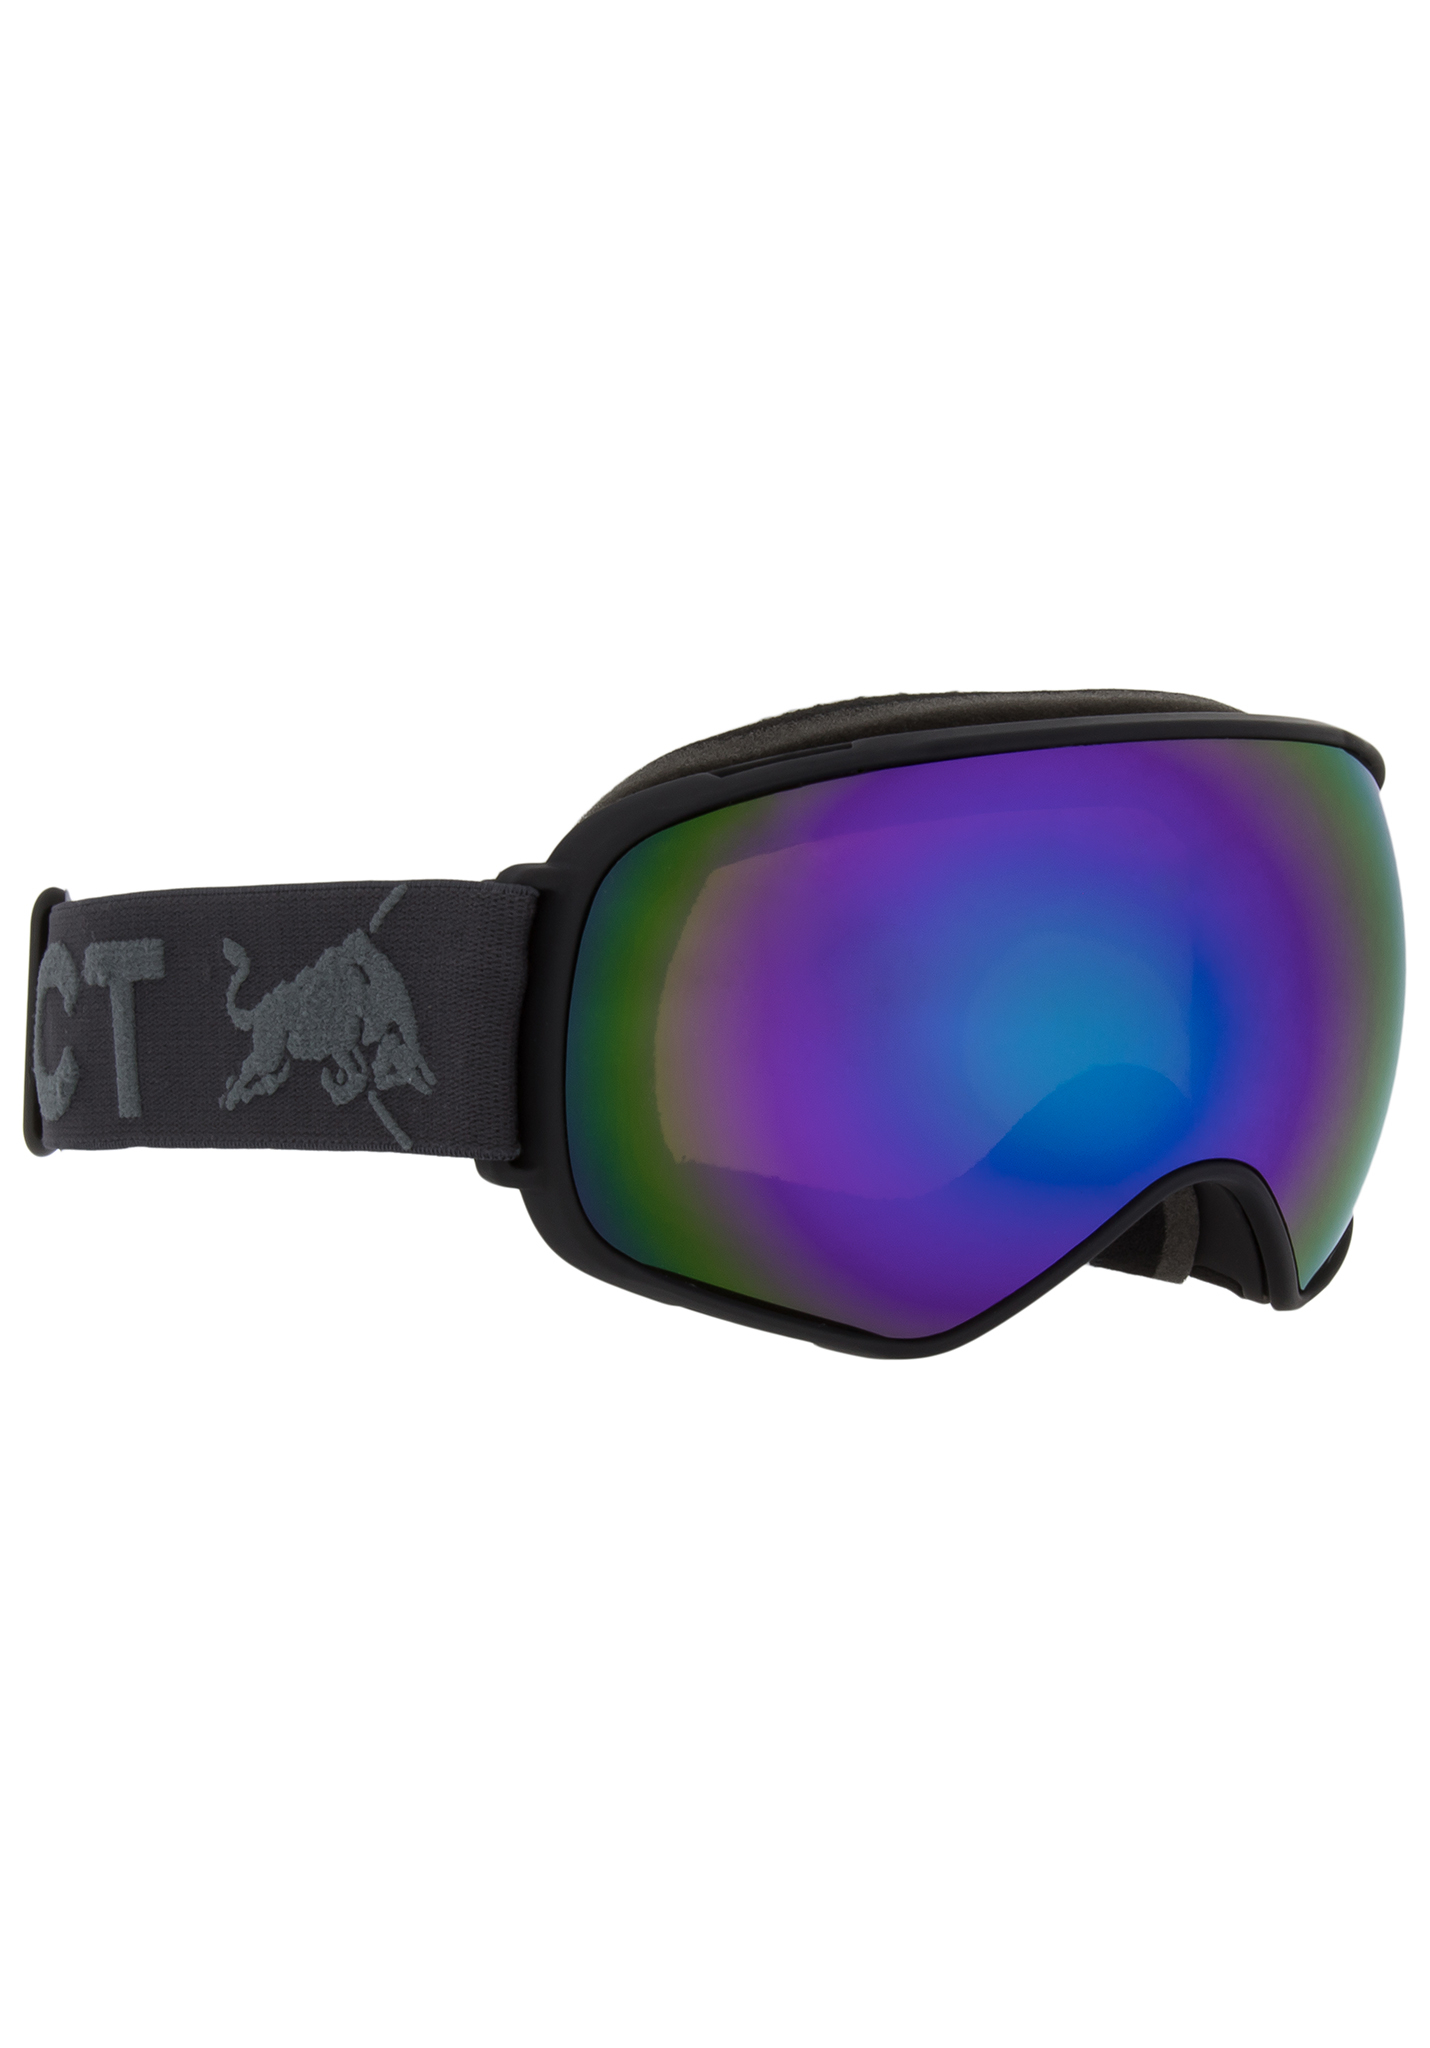 Red Bull SPECT Eyewear Alley Oop Snowboardbrillen schwarz/grüner schnee, braun mit grünem spiegel, kat. s One Size